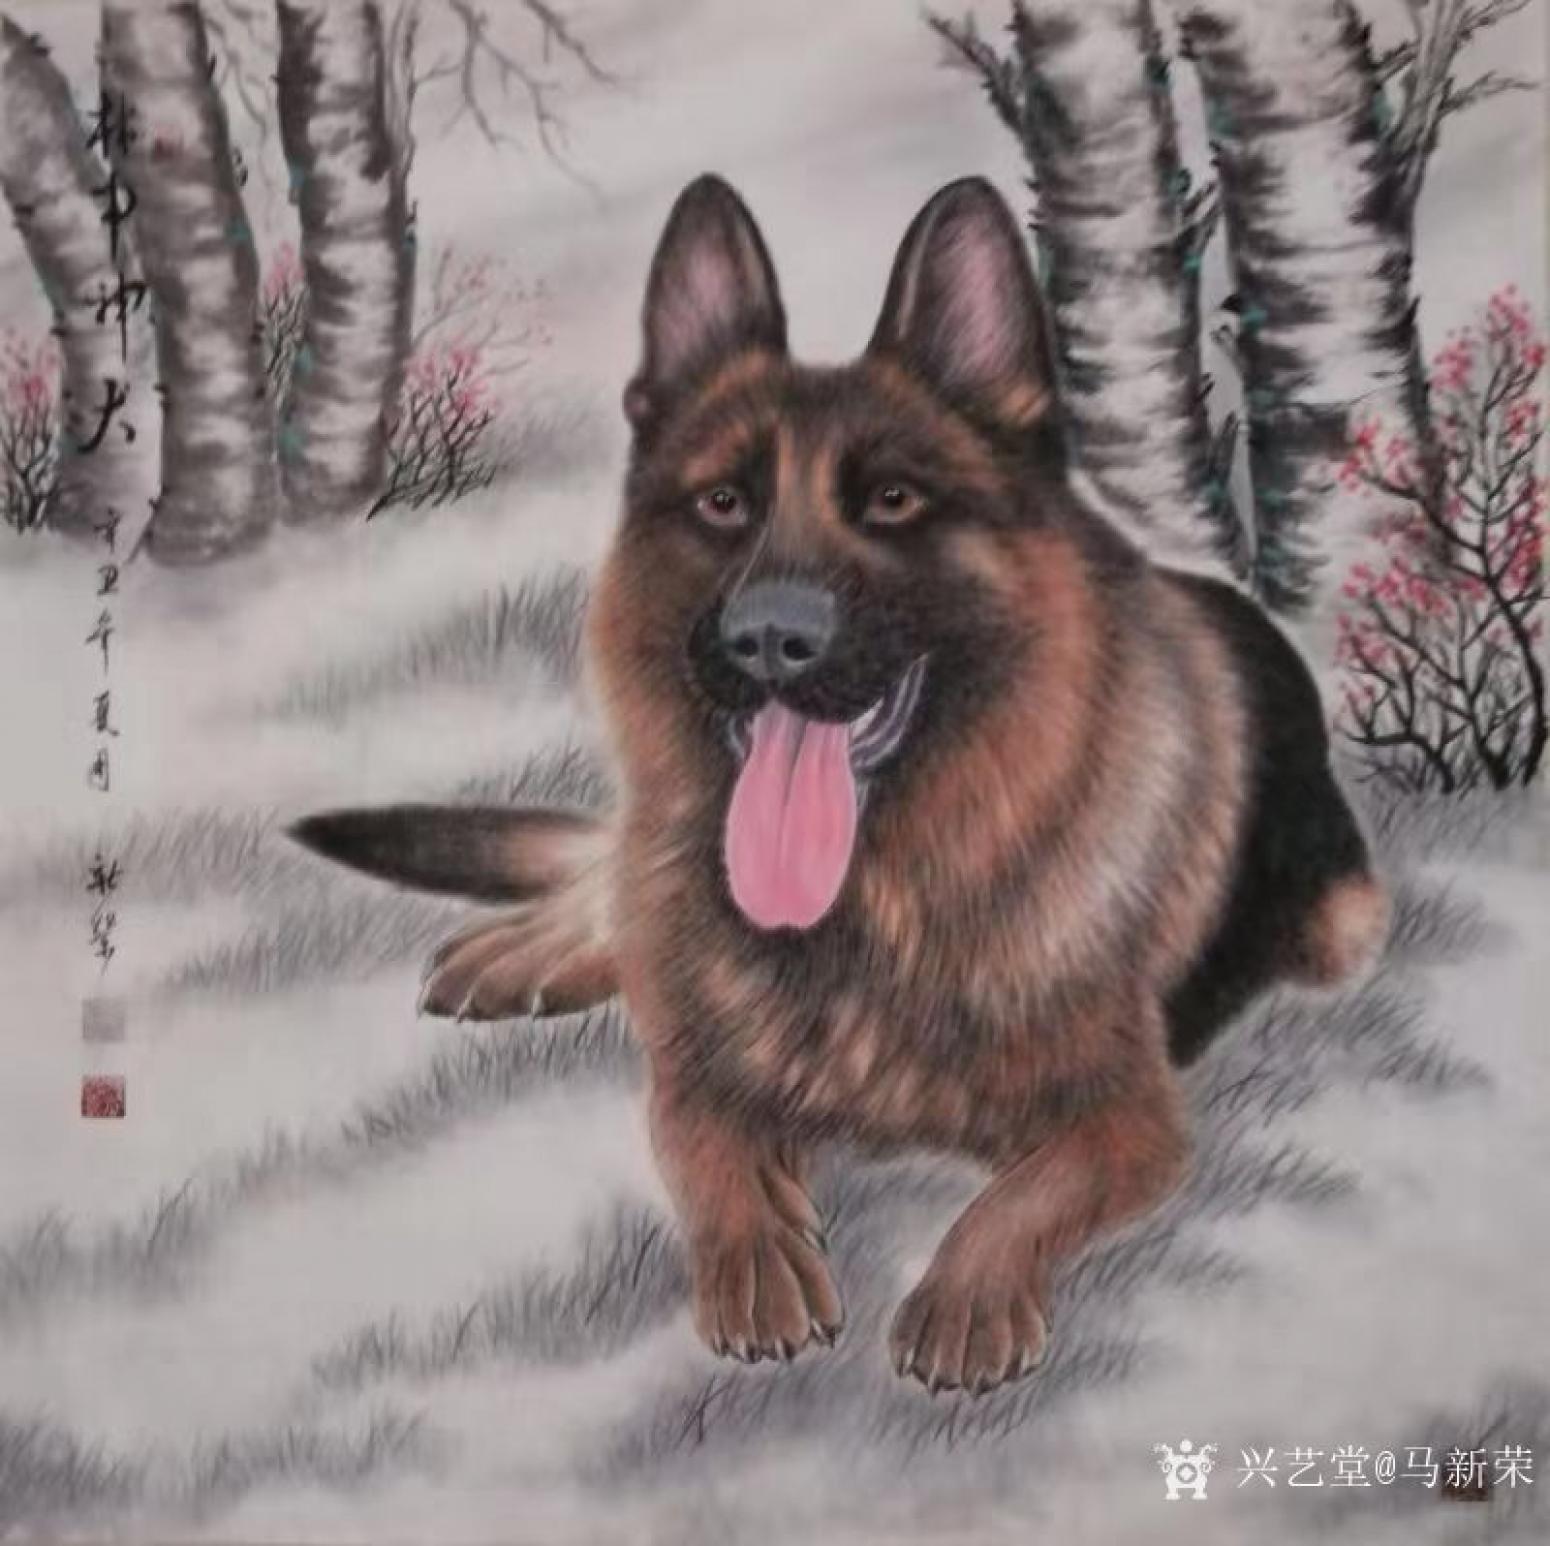 马新荣国画作品《动物画狗-林中神犬》